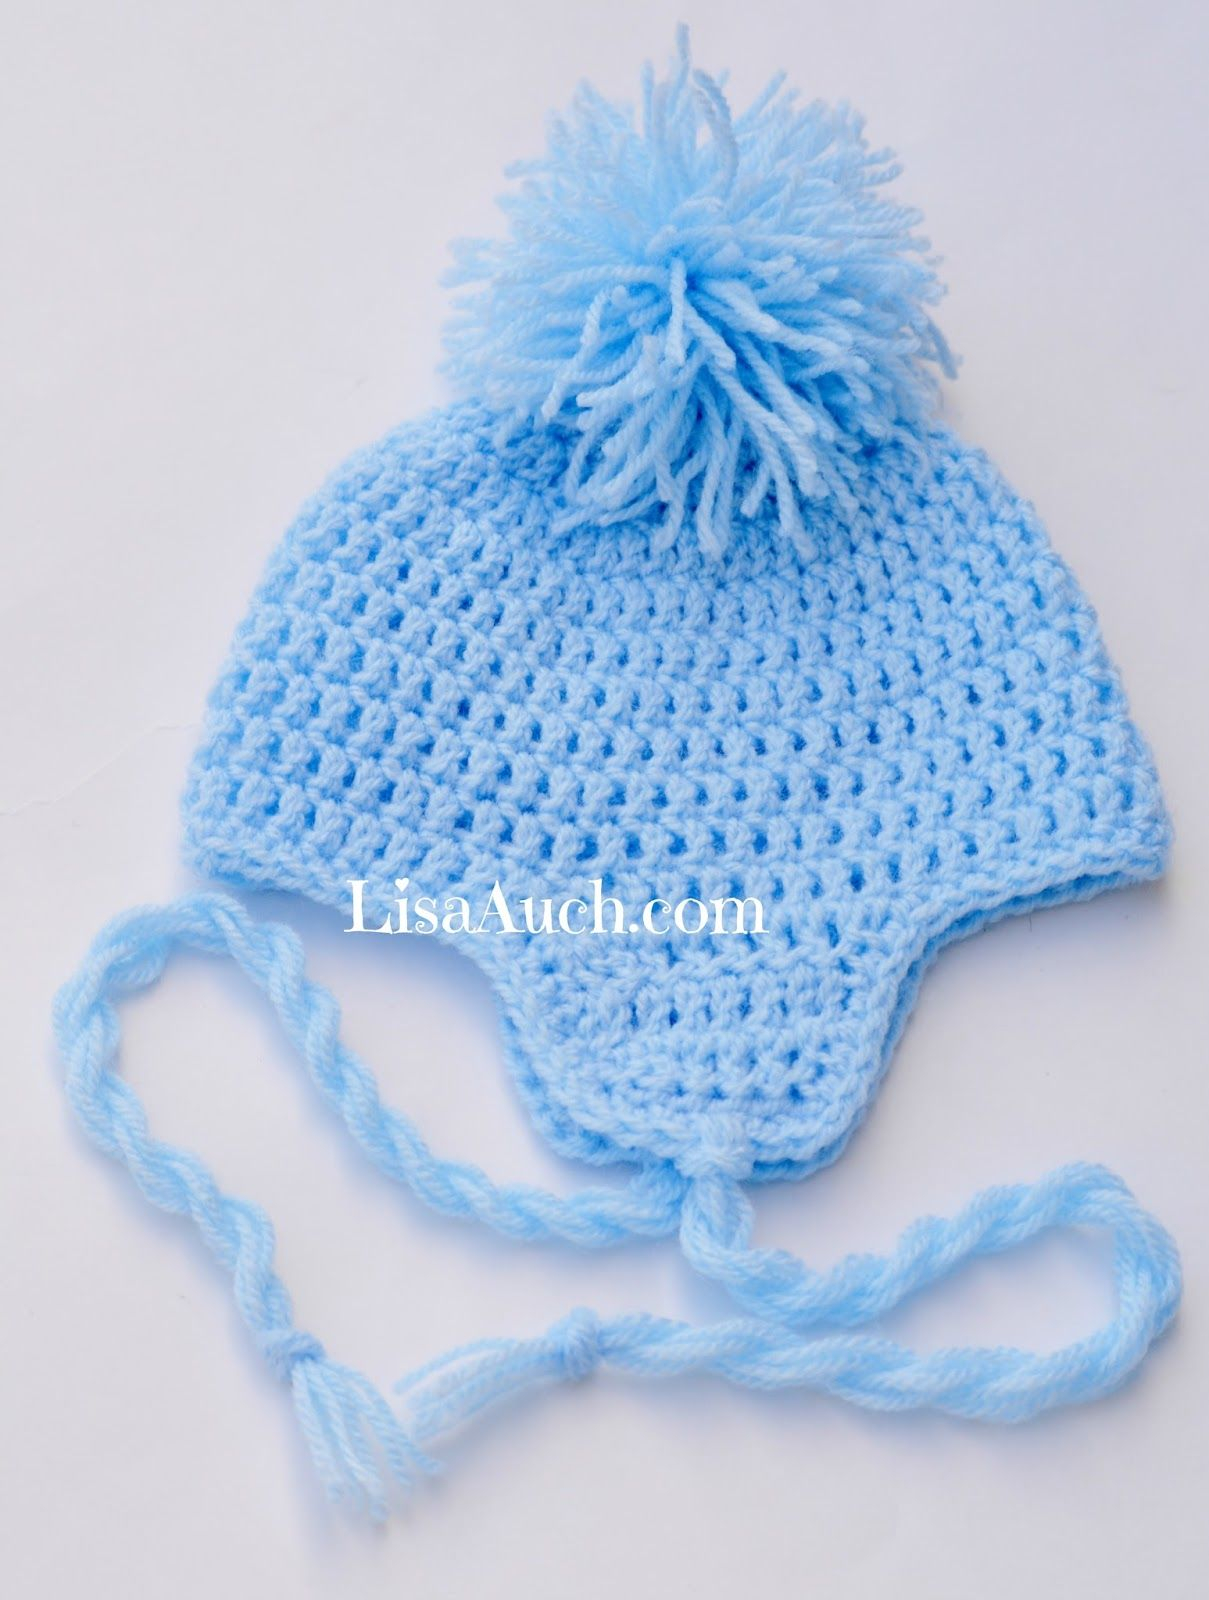 Baby Earflap Hat Crochet Pattern Free Free Crochet Ba Hat Pattern With Earflaps Crochet Pinterest